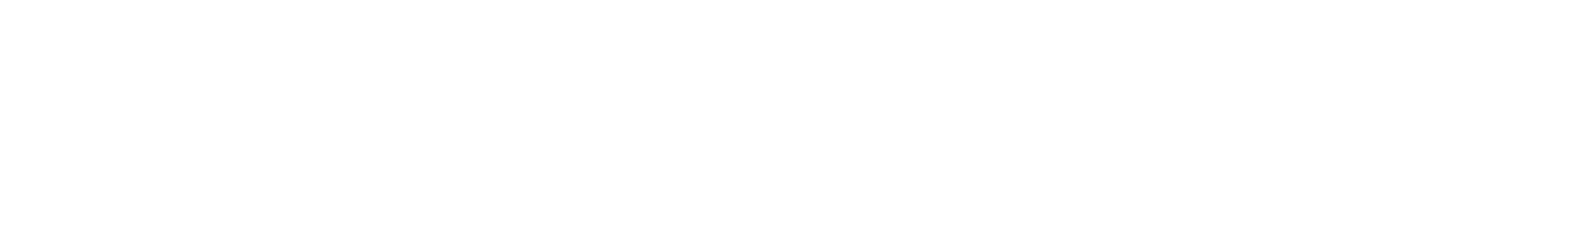 374Water Logo groß für dunkle Hintergründe (transparentes PNG)